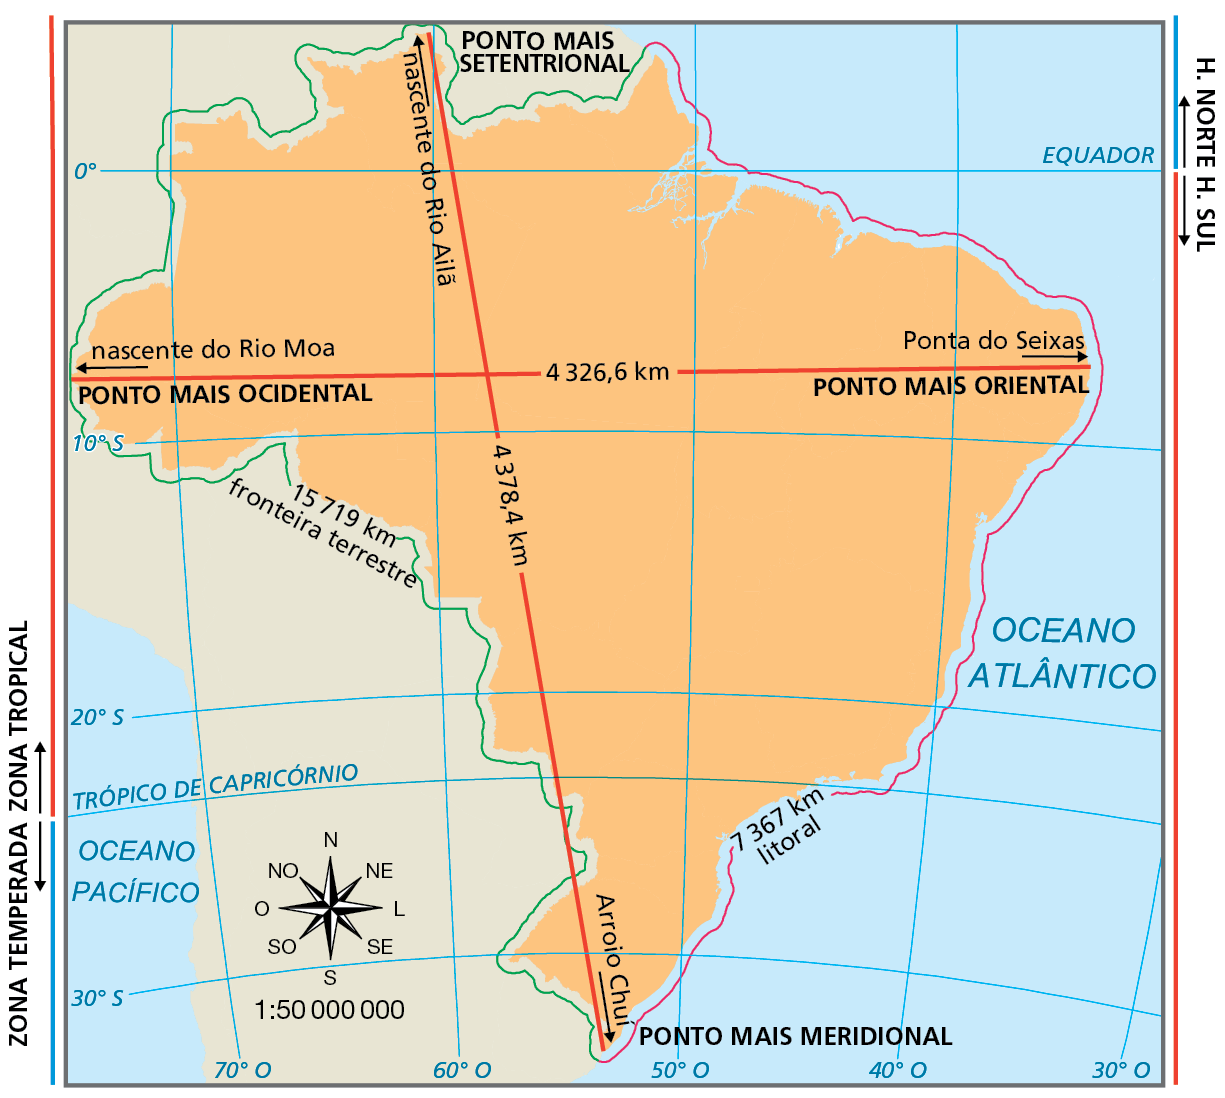 Mapa. Brasil: distâncias dos pontos extremos. Mapa do Brasil, com destaque para uma linha vermelha vertical levemente inclinada à esquerda, que liga os pontos extremos norte e sul do país. Ponto mais setentrional (ponto extremo norte): nascente do Rio Ailã. Ponto mais meridional (ponto extremo sul): Arroio Chuí. A distância entre esses estremos é de 4.378,4 quilômetros. Cruzando a linha vertical, está uma linha vermelha  horizontal, ligando os pontos extremos oeste e leste. Ponto mais ocidental (ponto extremo oeste): nascente do Rio Moa. Ponto mais oriental (ponto extremo leste): Ponta do Seixas. A distância entre esses dois extremos é de  4.326,6 quilômetros. Fronteira terrestre do Brasil é de 15.719 quilômetros. Linha do litoral brasileiro é de 7.367 quilômetros.  Abaixo, rosa dos ventos e escala de 1 para 50 milhões (centímetros).